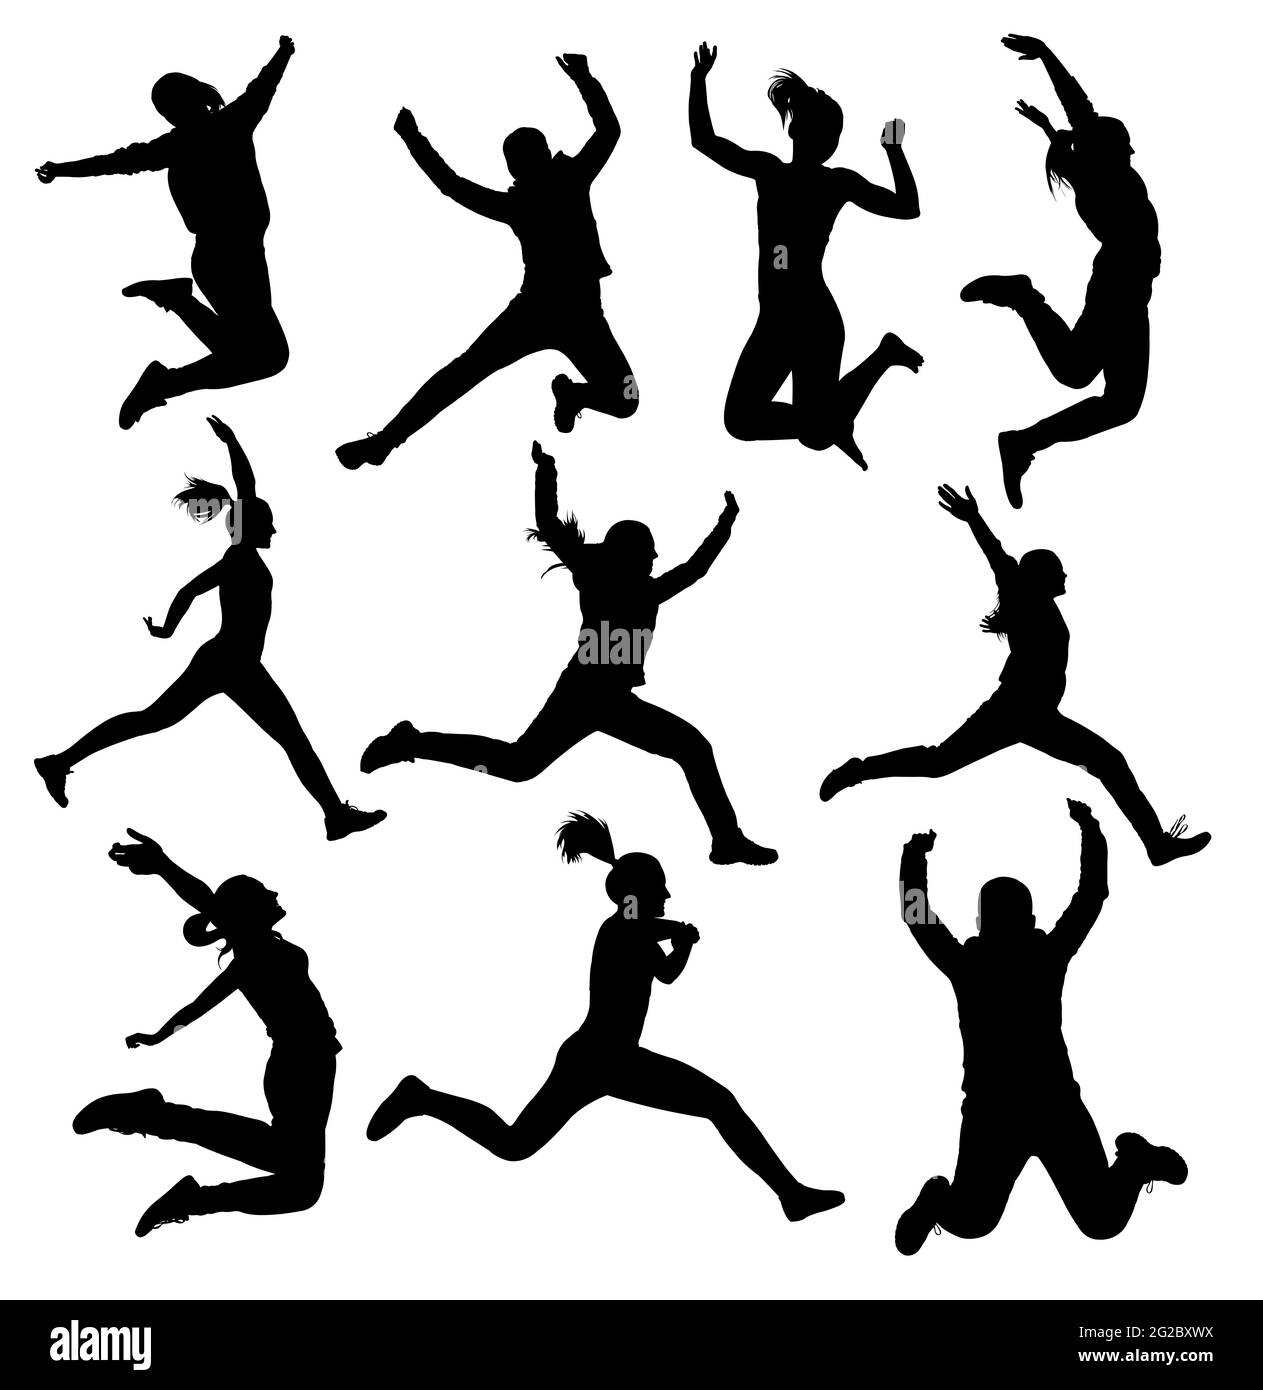 Collection de silhouettes jumping pour filles isolées sur fond blanc Banque D'Images